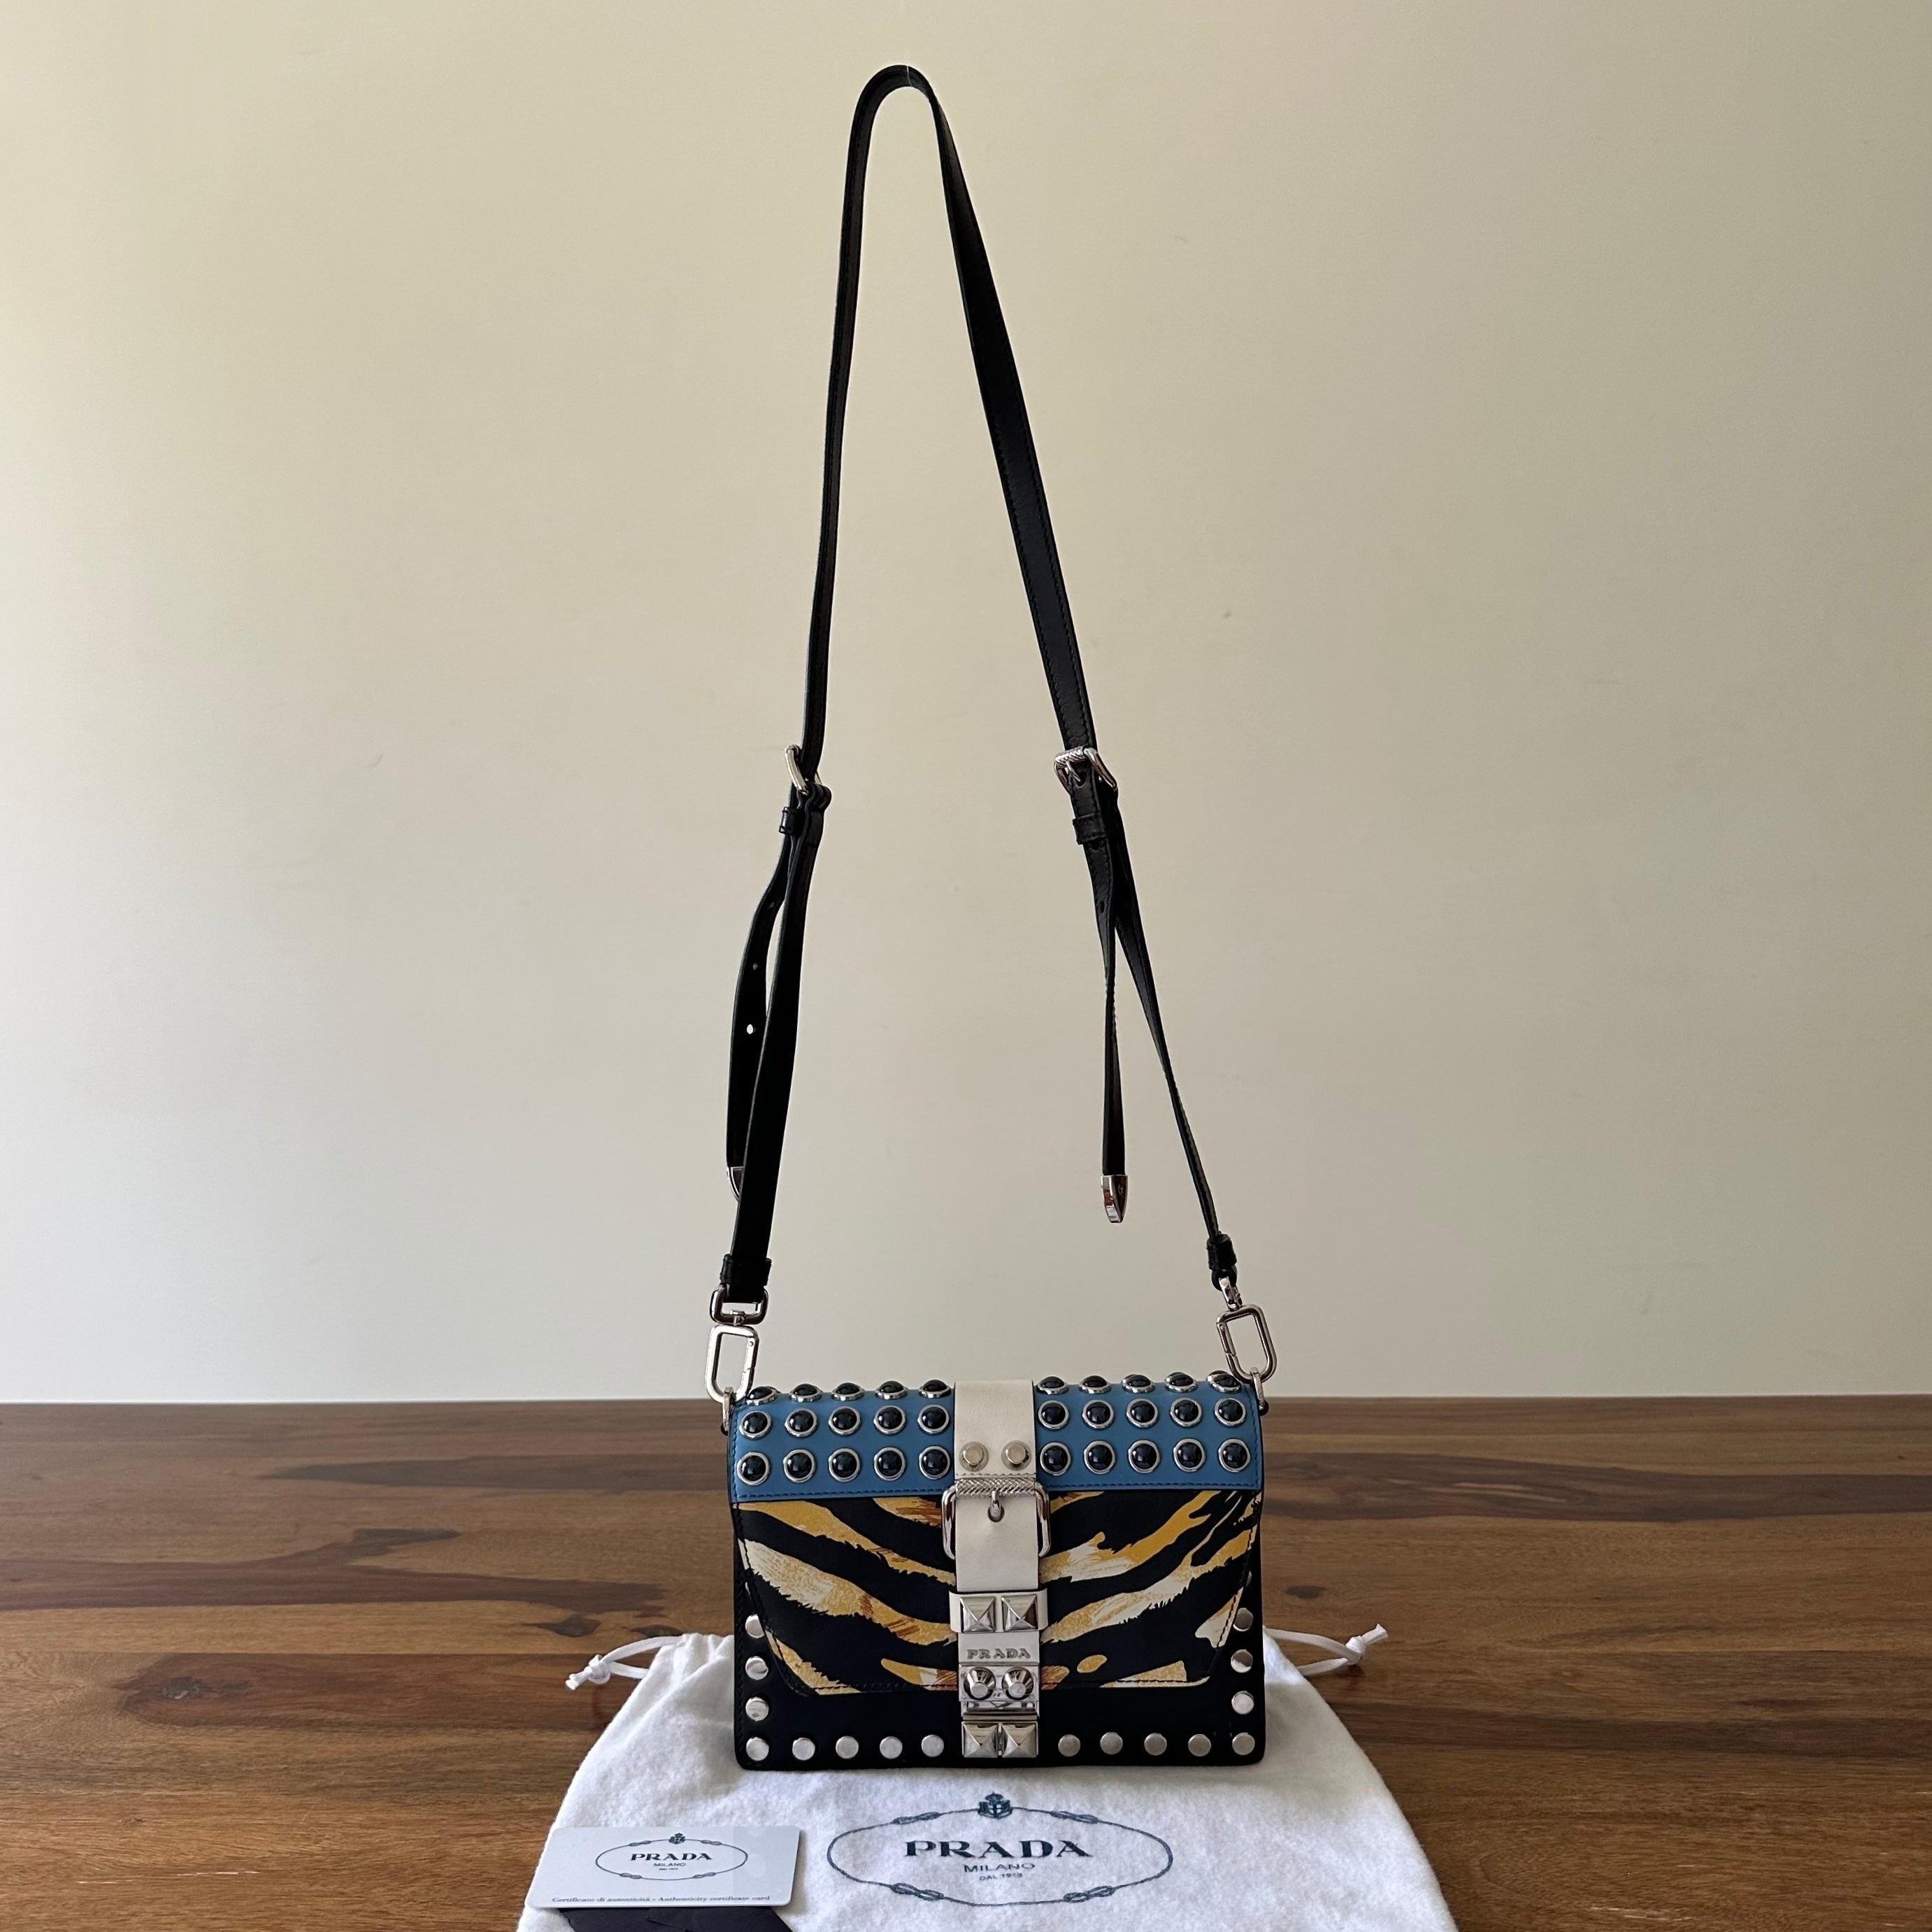 Prada hand bag real vs fake review. How to spot counterfeit Prada Saffiano  bags and purses - YouTube